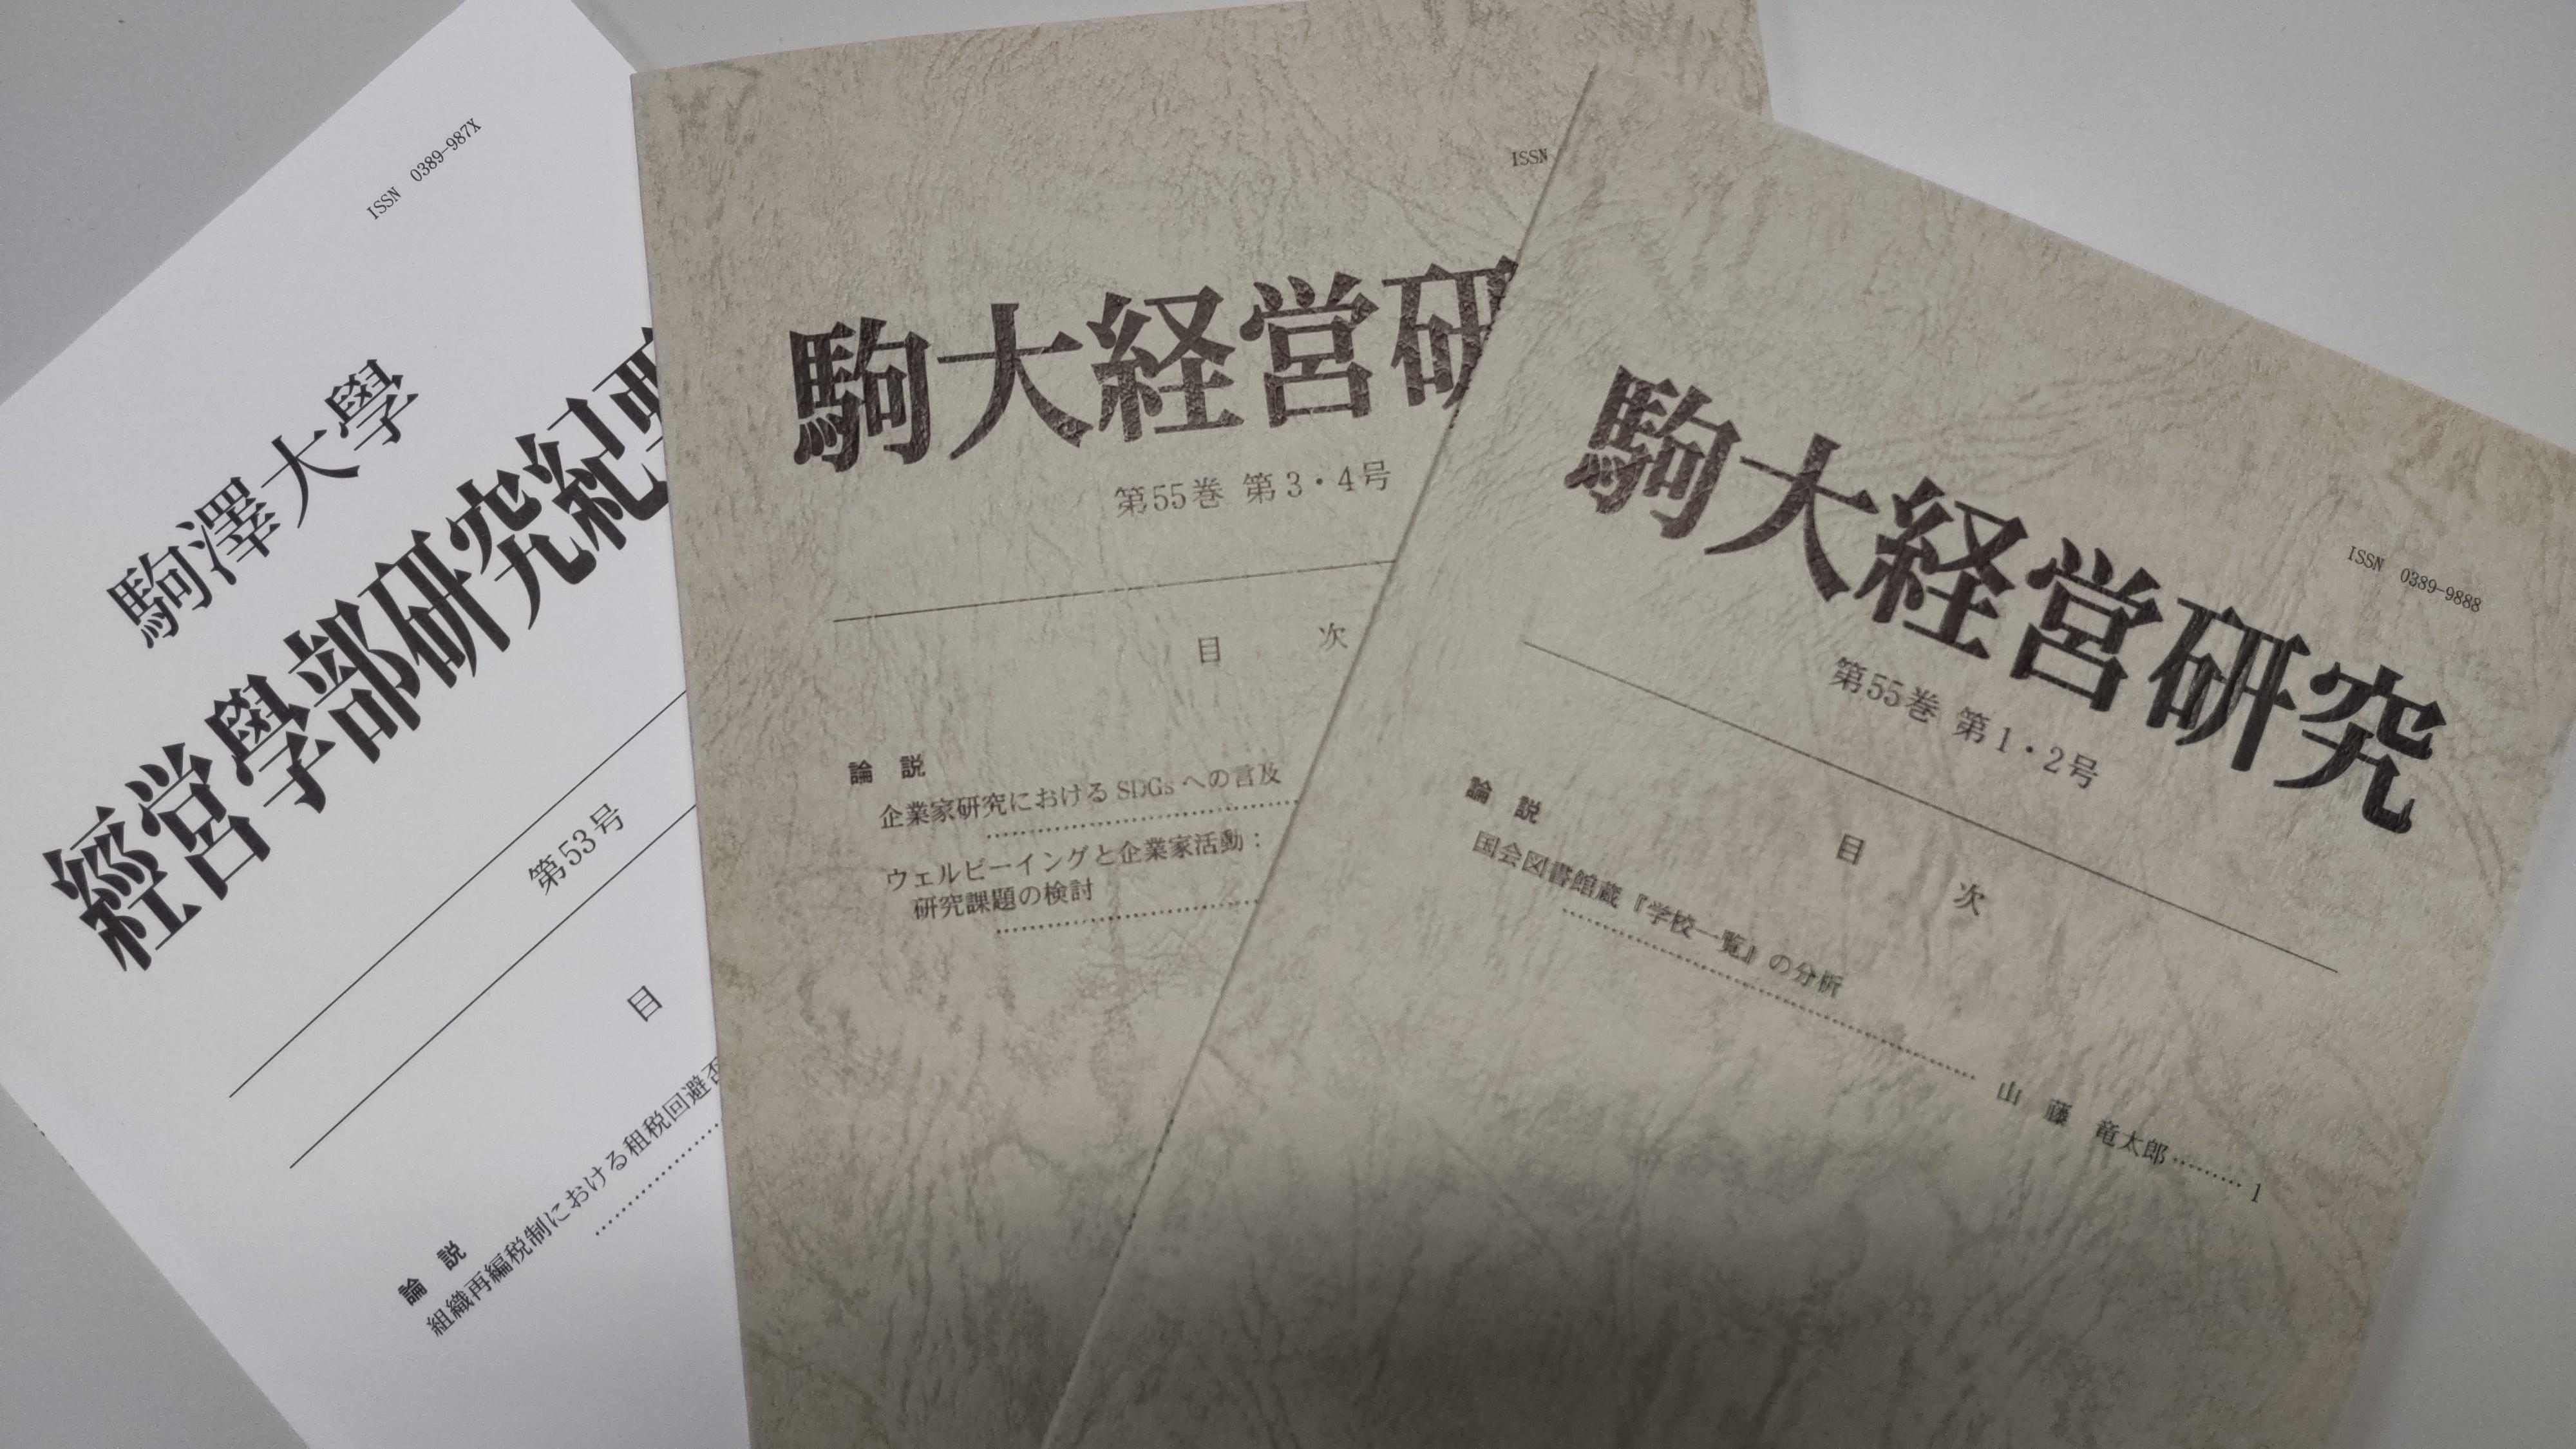 駒大経営研究第55巻第1・2号、第55巻第3・4号、駒澤大学経営学部研究紀要第53号が刊行されました